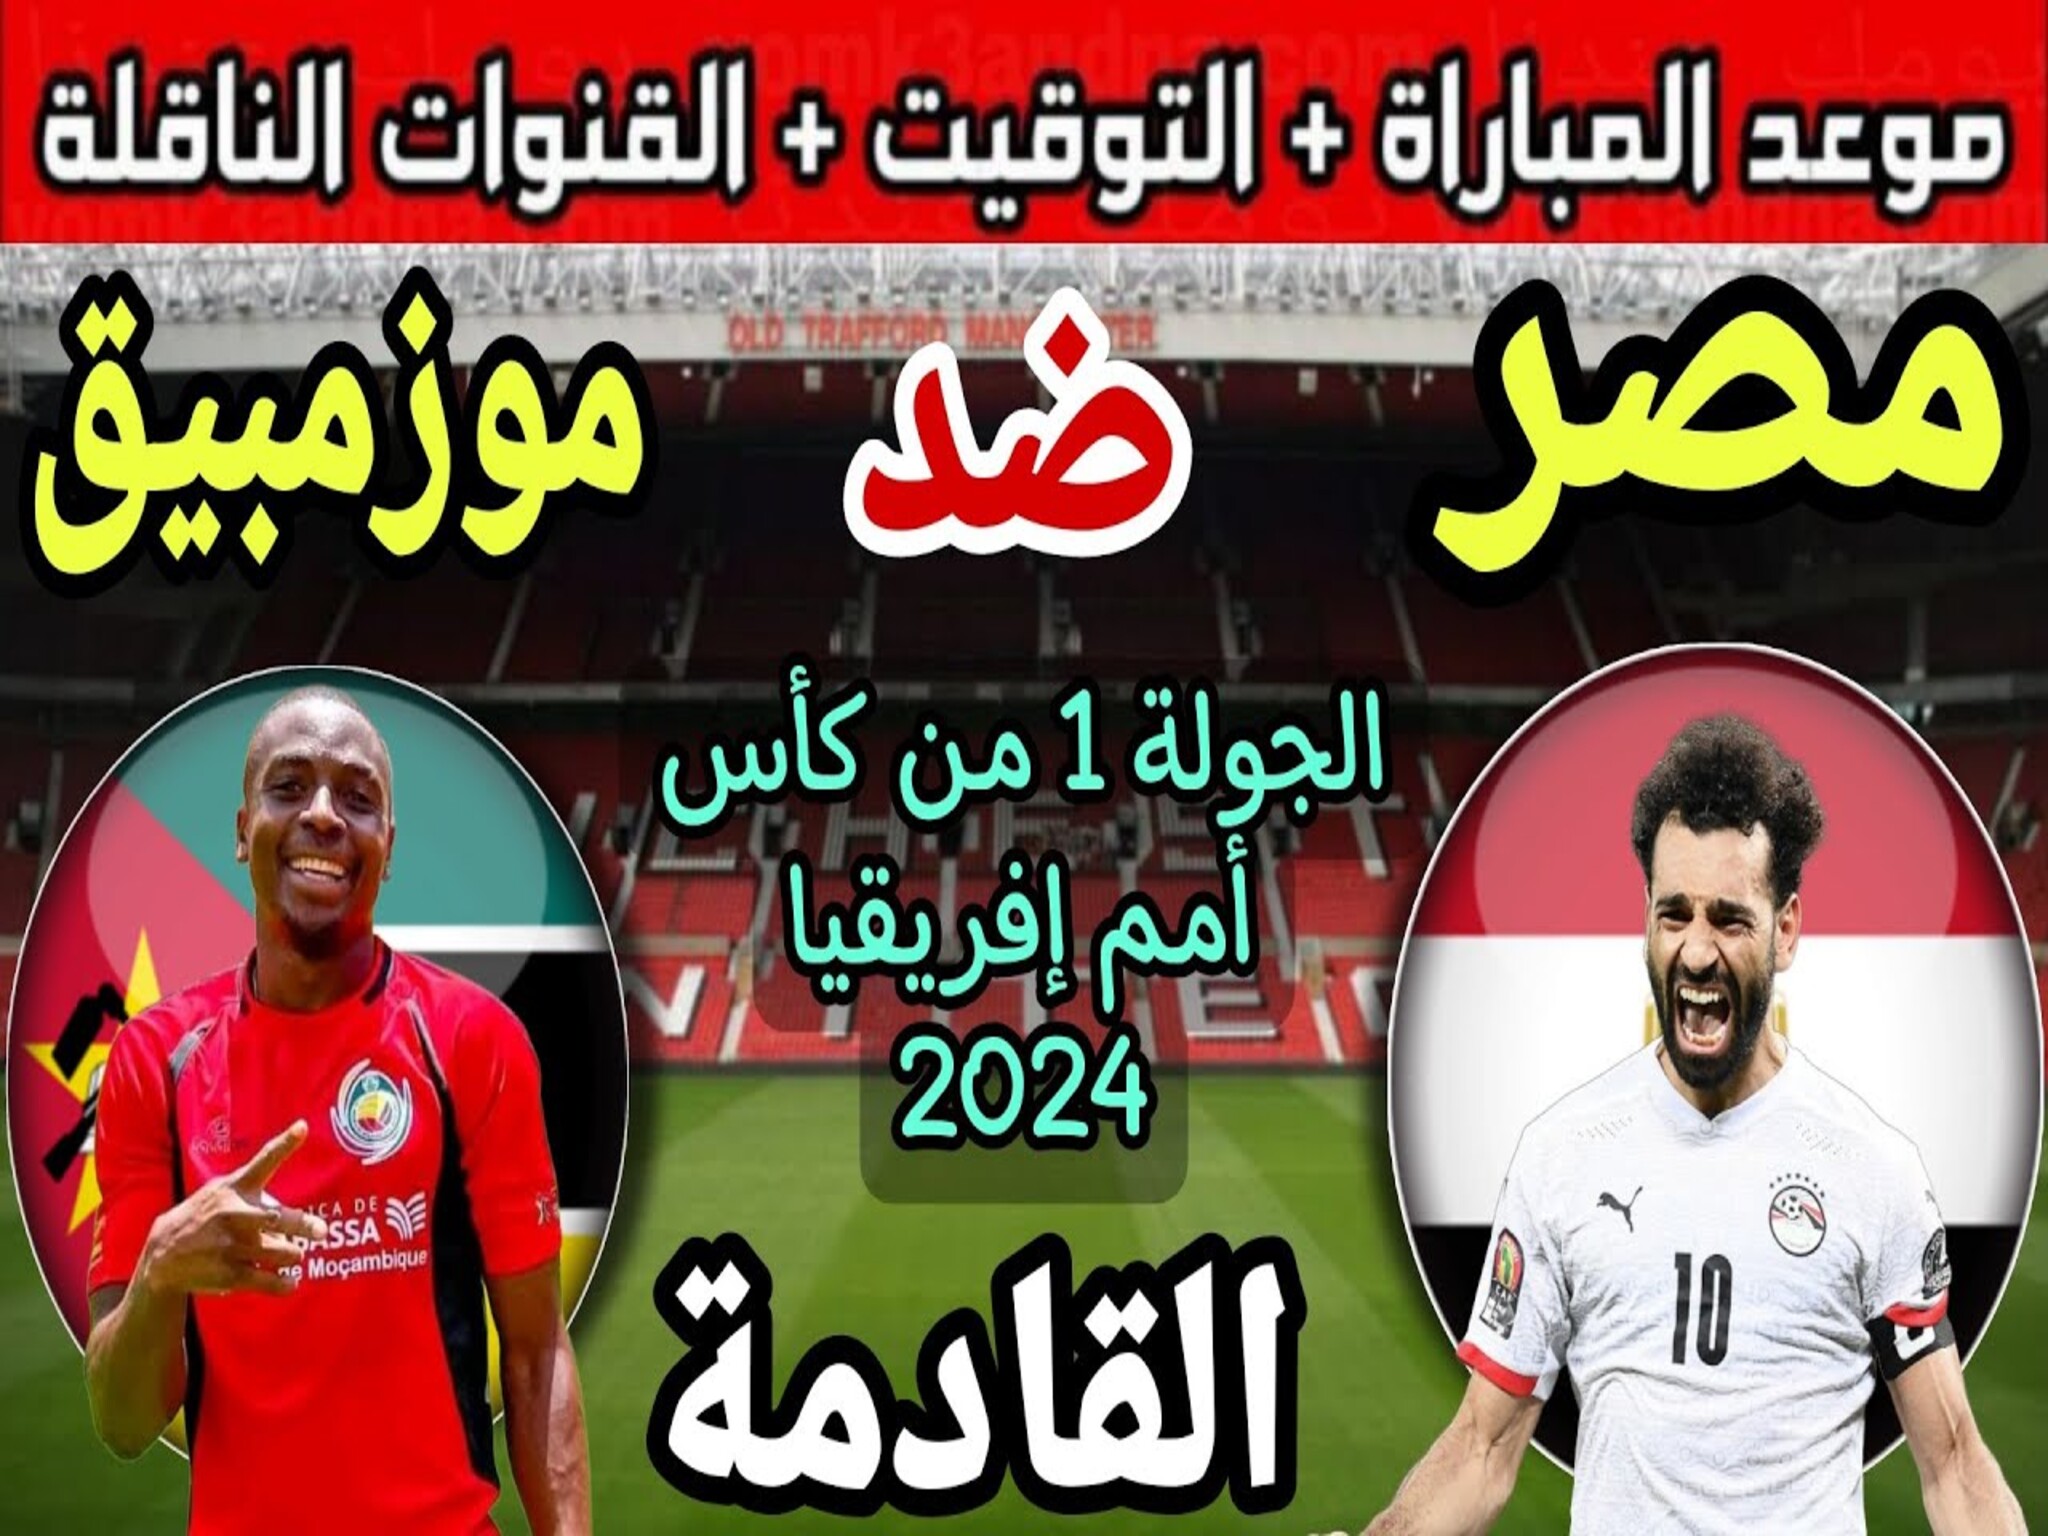 موعد مباراة منتخب مصر الجولة الأولى من كأس الأمم الإفريقية 2024 والقنوات الناقلة